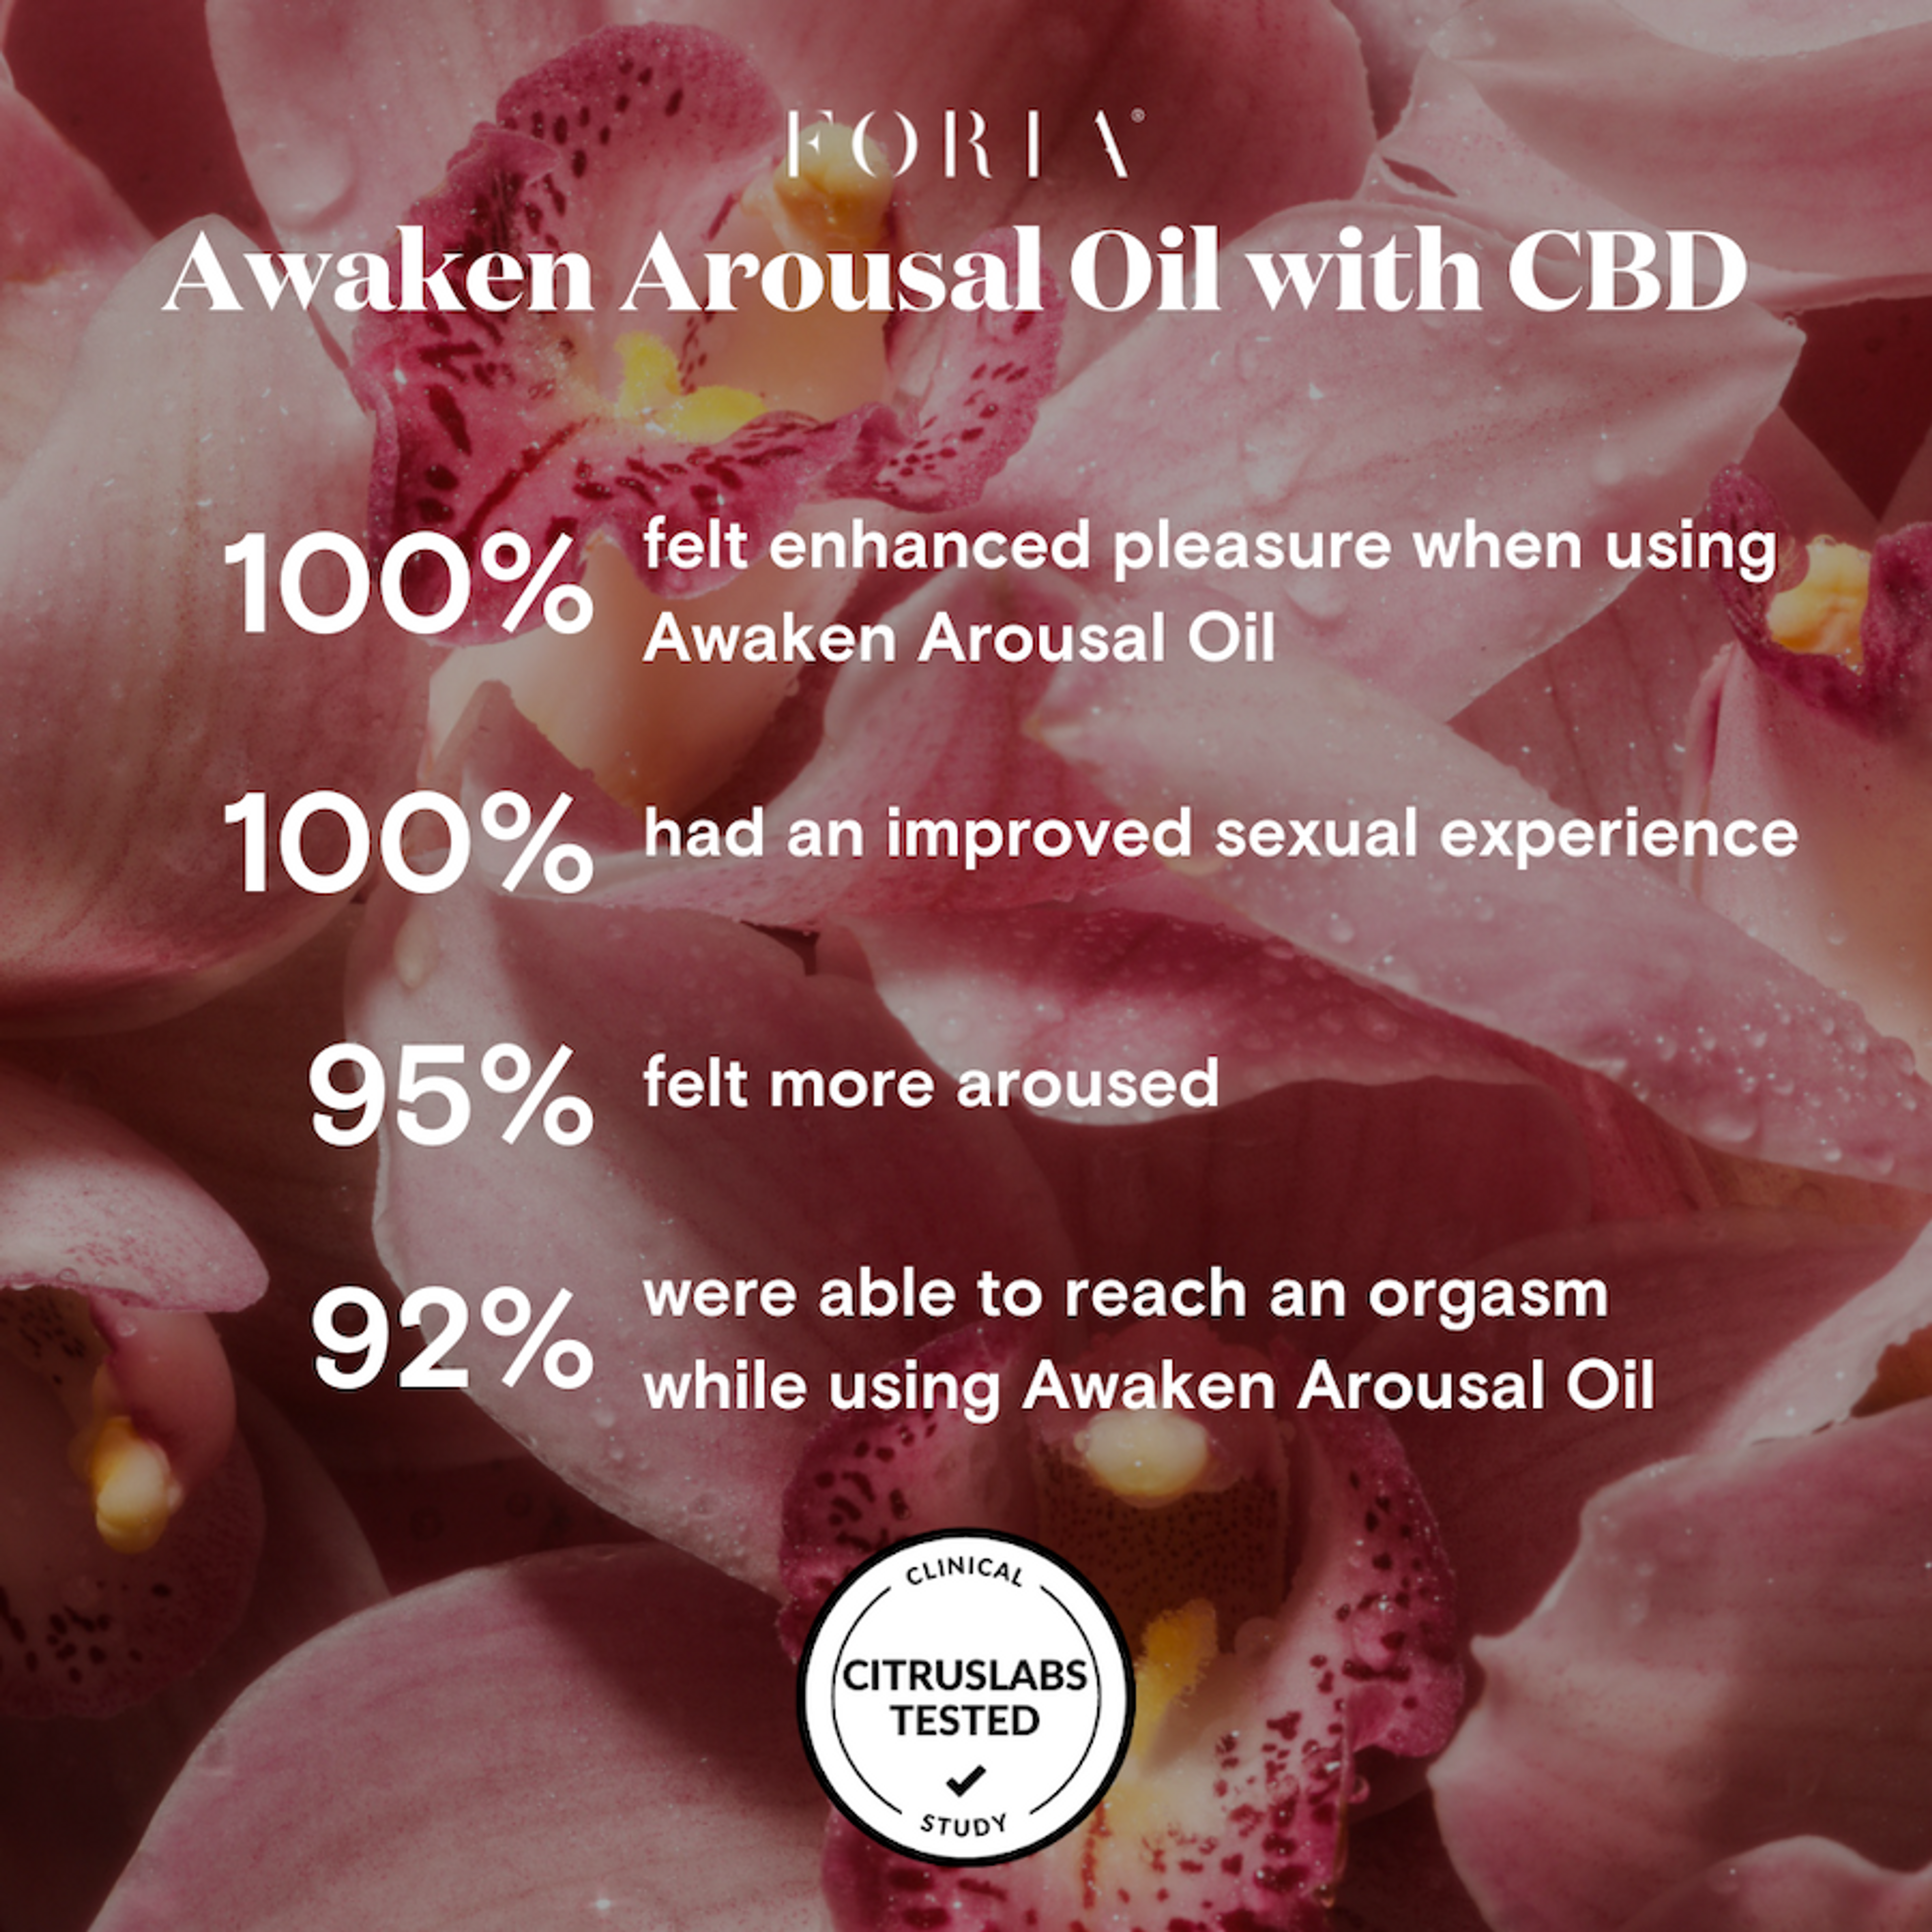 Awaken Arousal Oil with CBD - Marketing